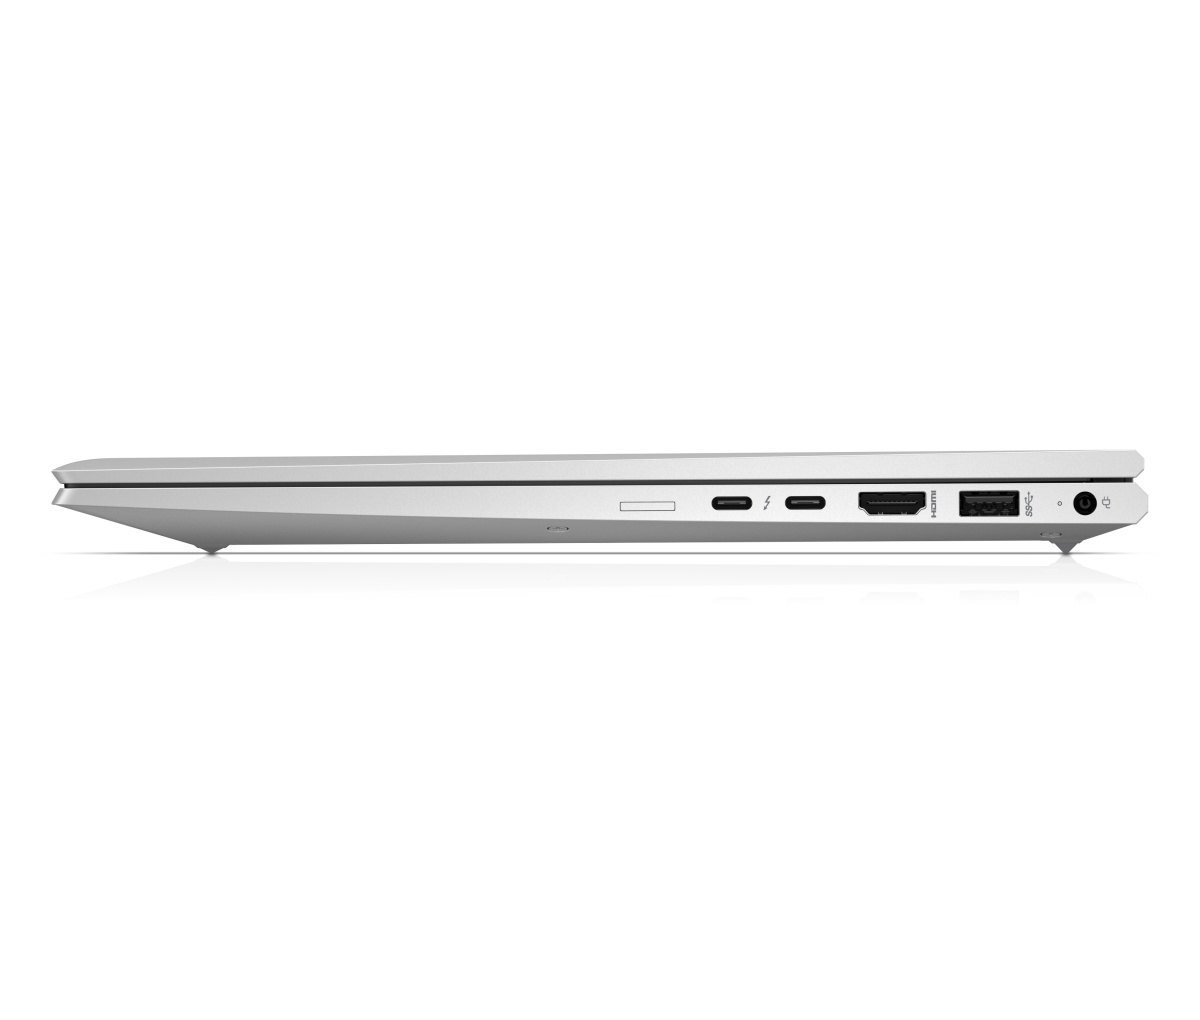 HP EliteBook 850 G7